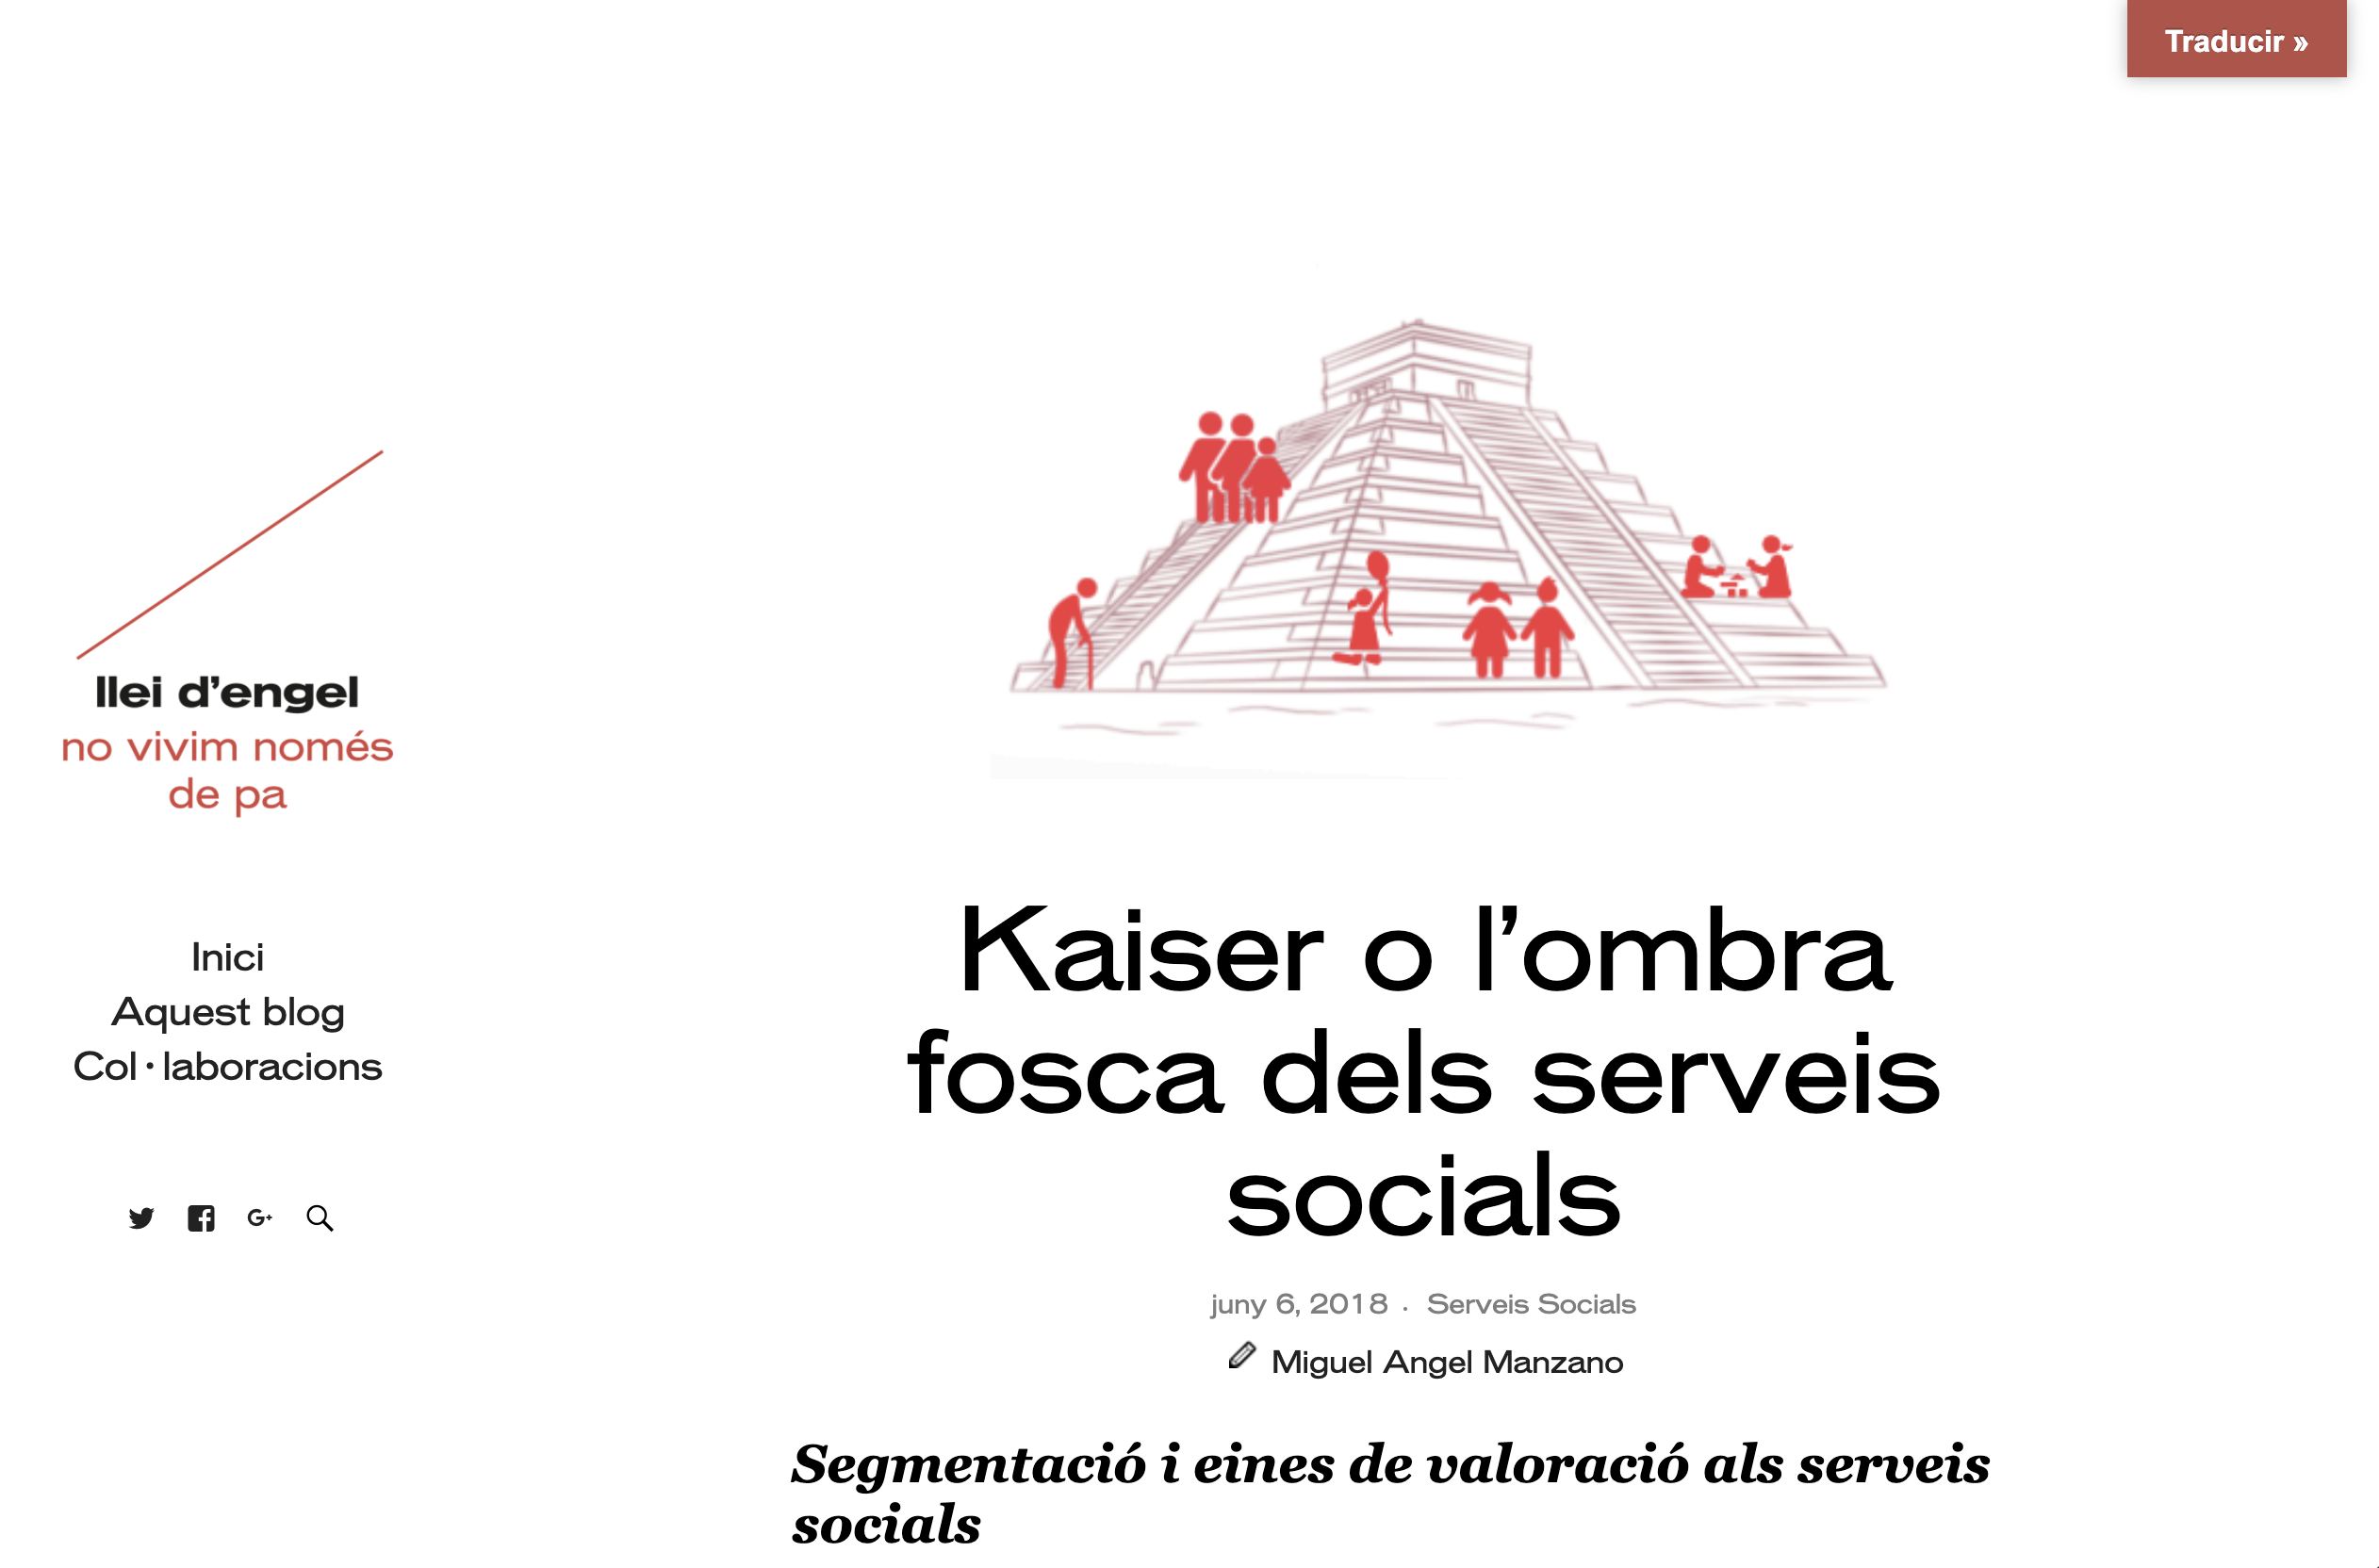 Manzano, M.A., Kaiser o l’ombra fosca dels Serveis Socials, Barcelona 2018